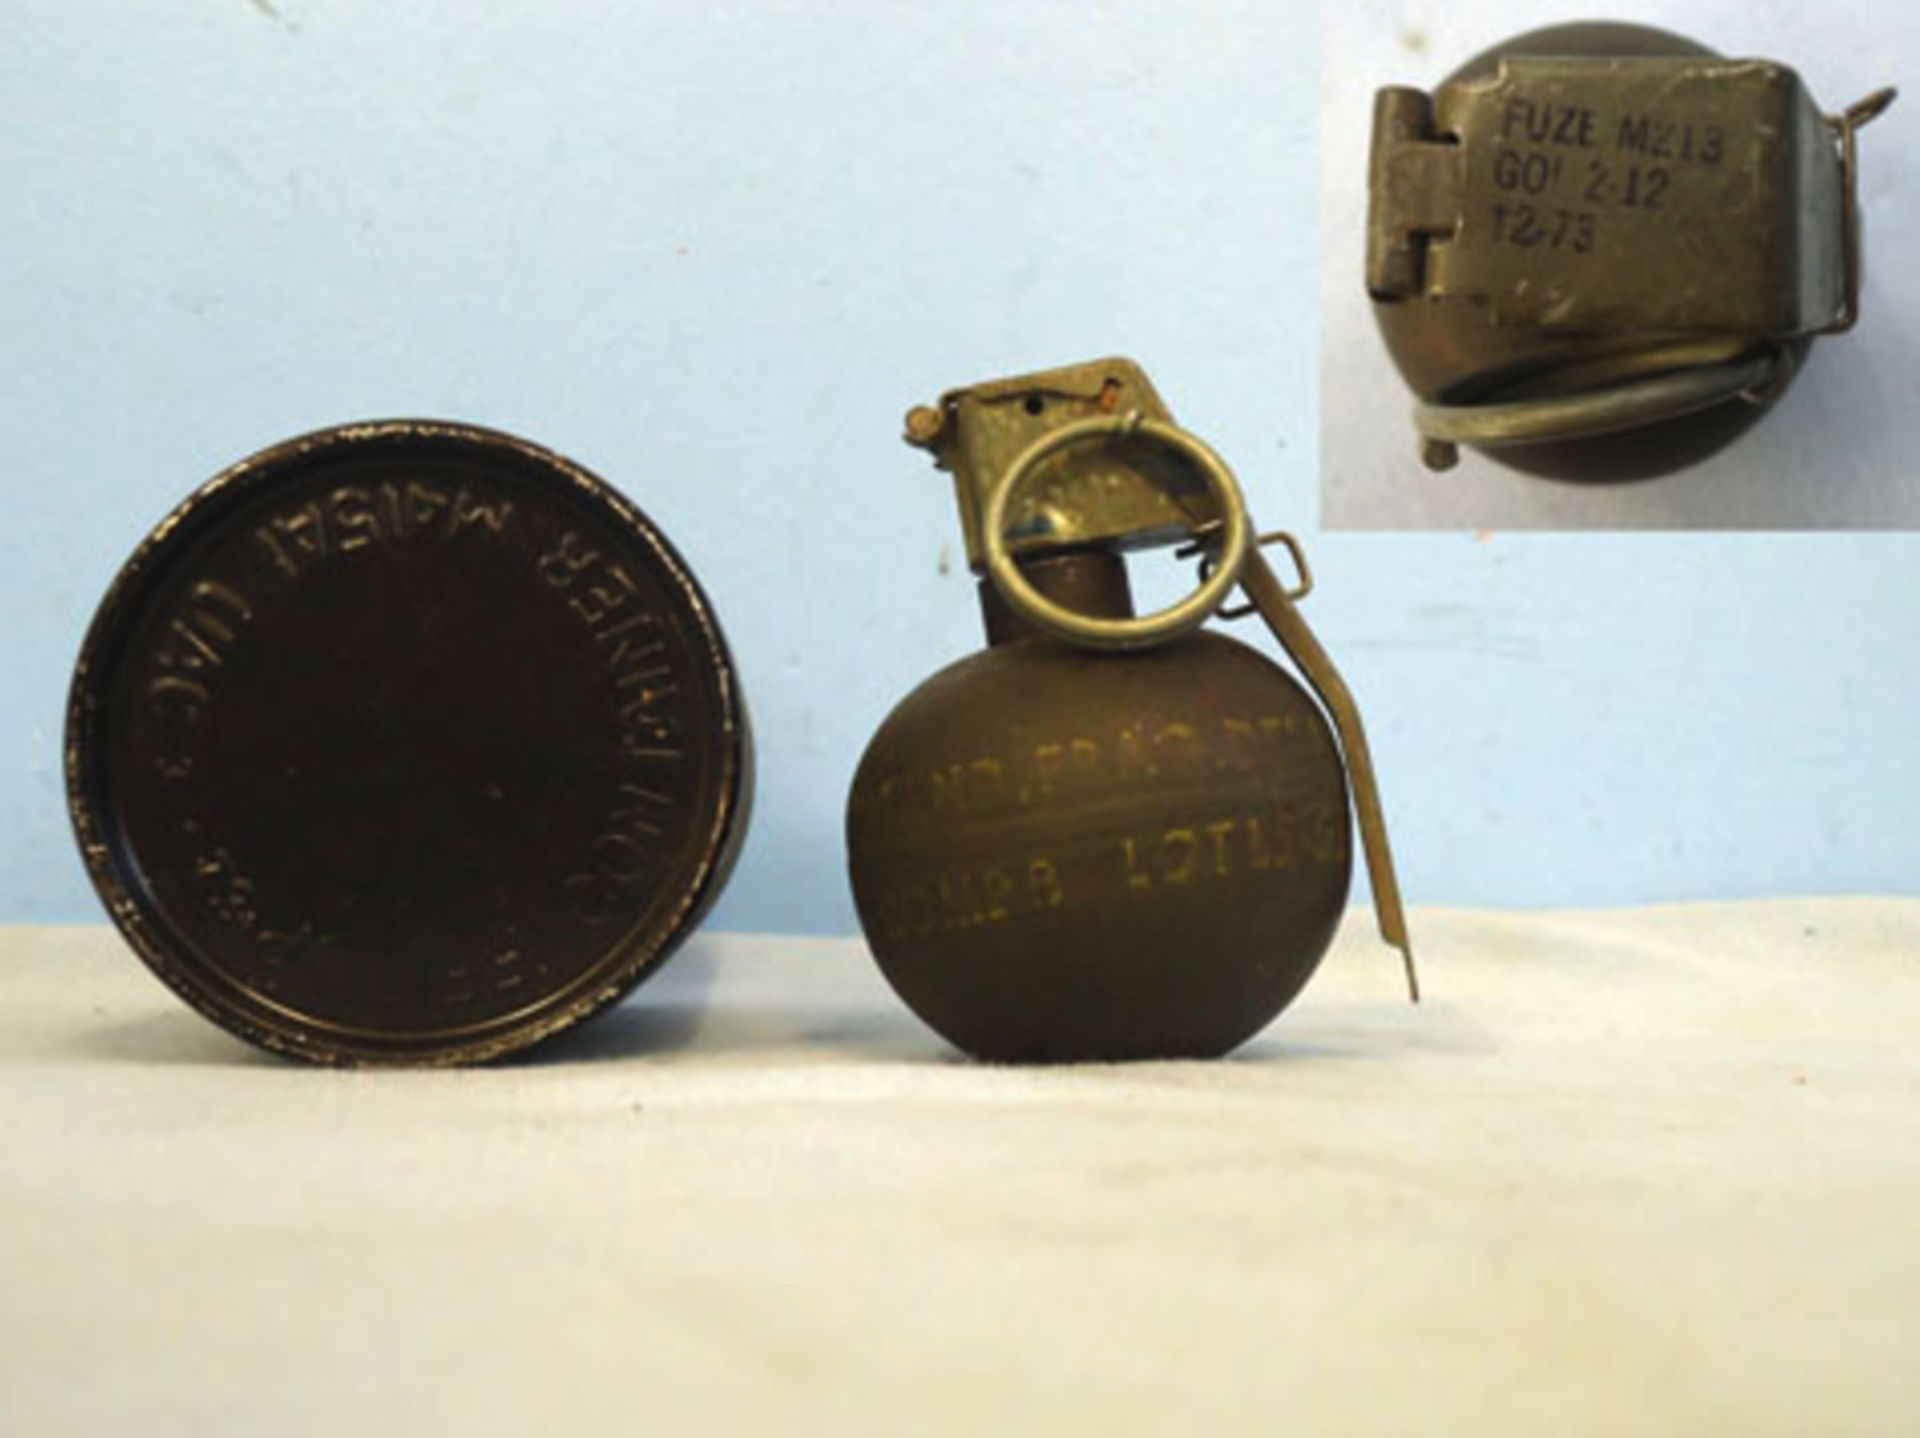 INERT DEACTIVATED Rare Near Mint Vietnam War Period American M67 Fragmentation Hand Grenade